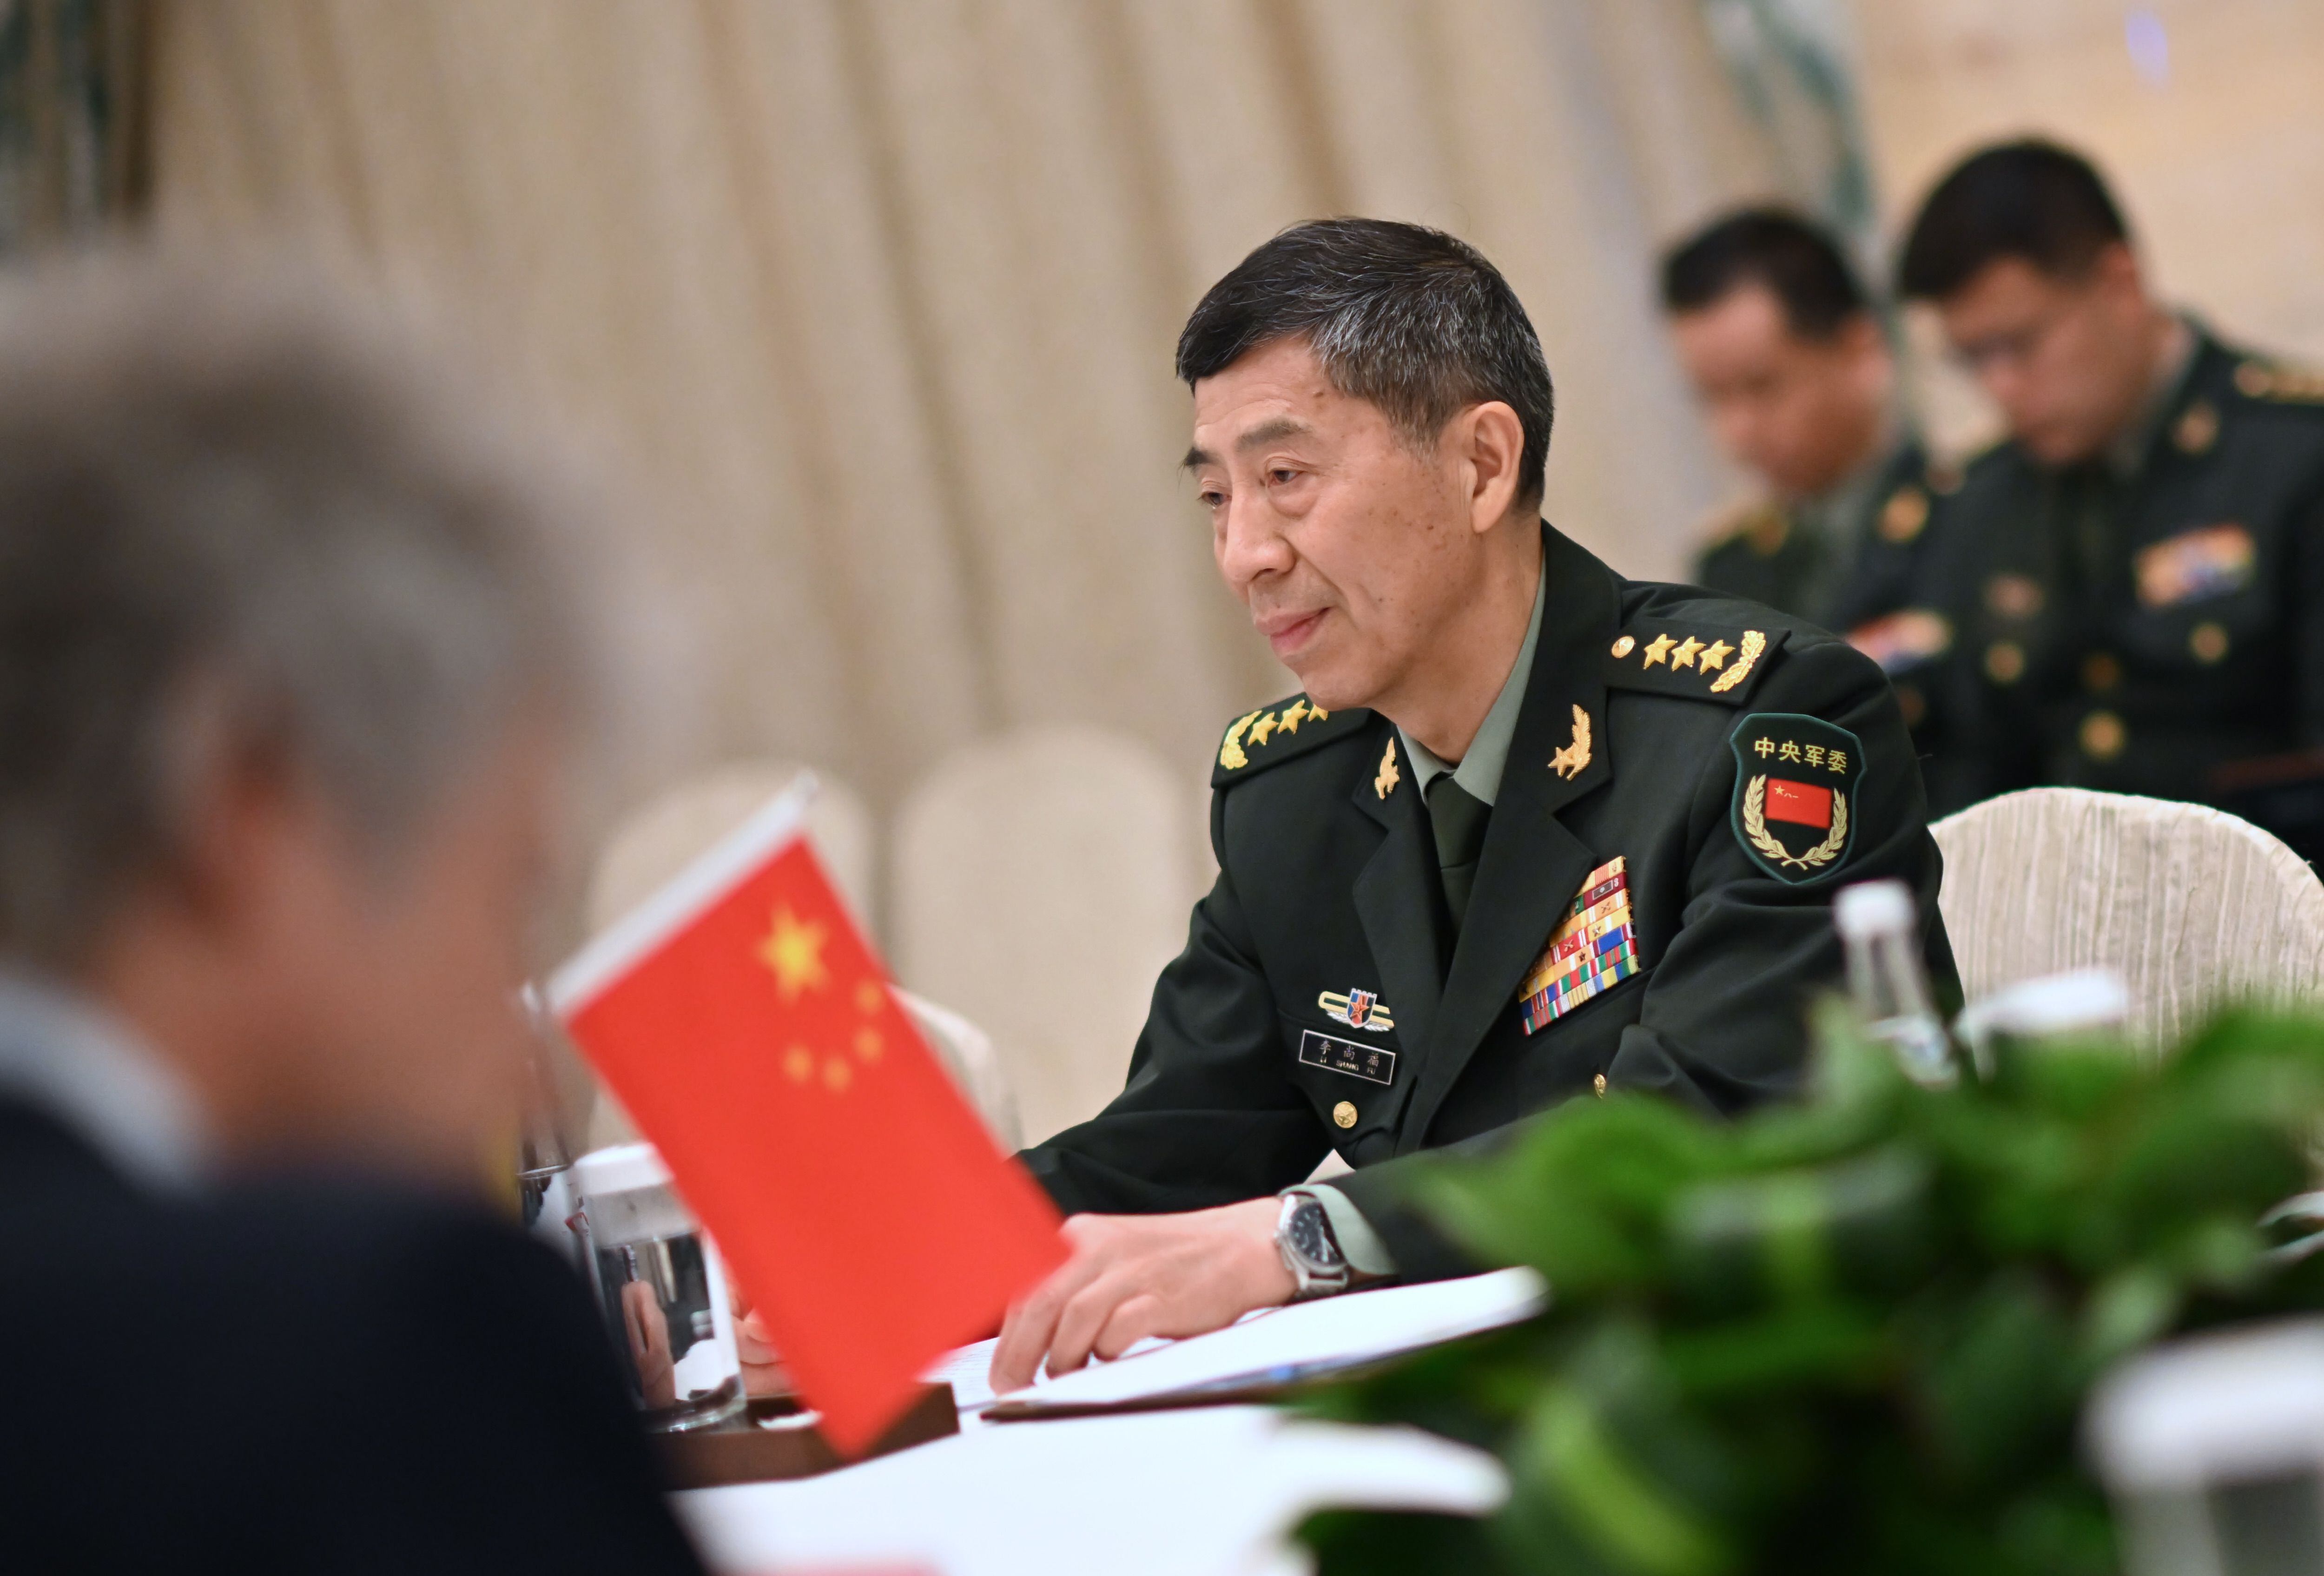 En el sistema chino, el ministro de Defensa Nacional se considera bastante menos poderoso muchos equivalentes internacionales. (EUROPA PRESS)
